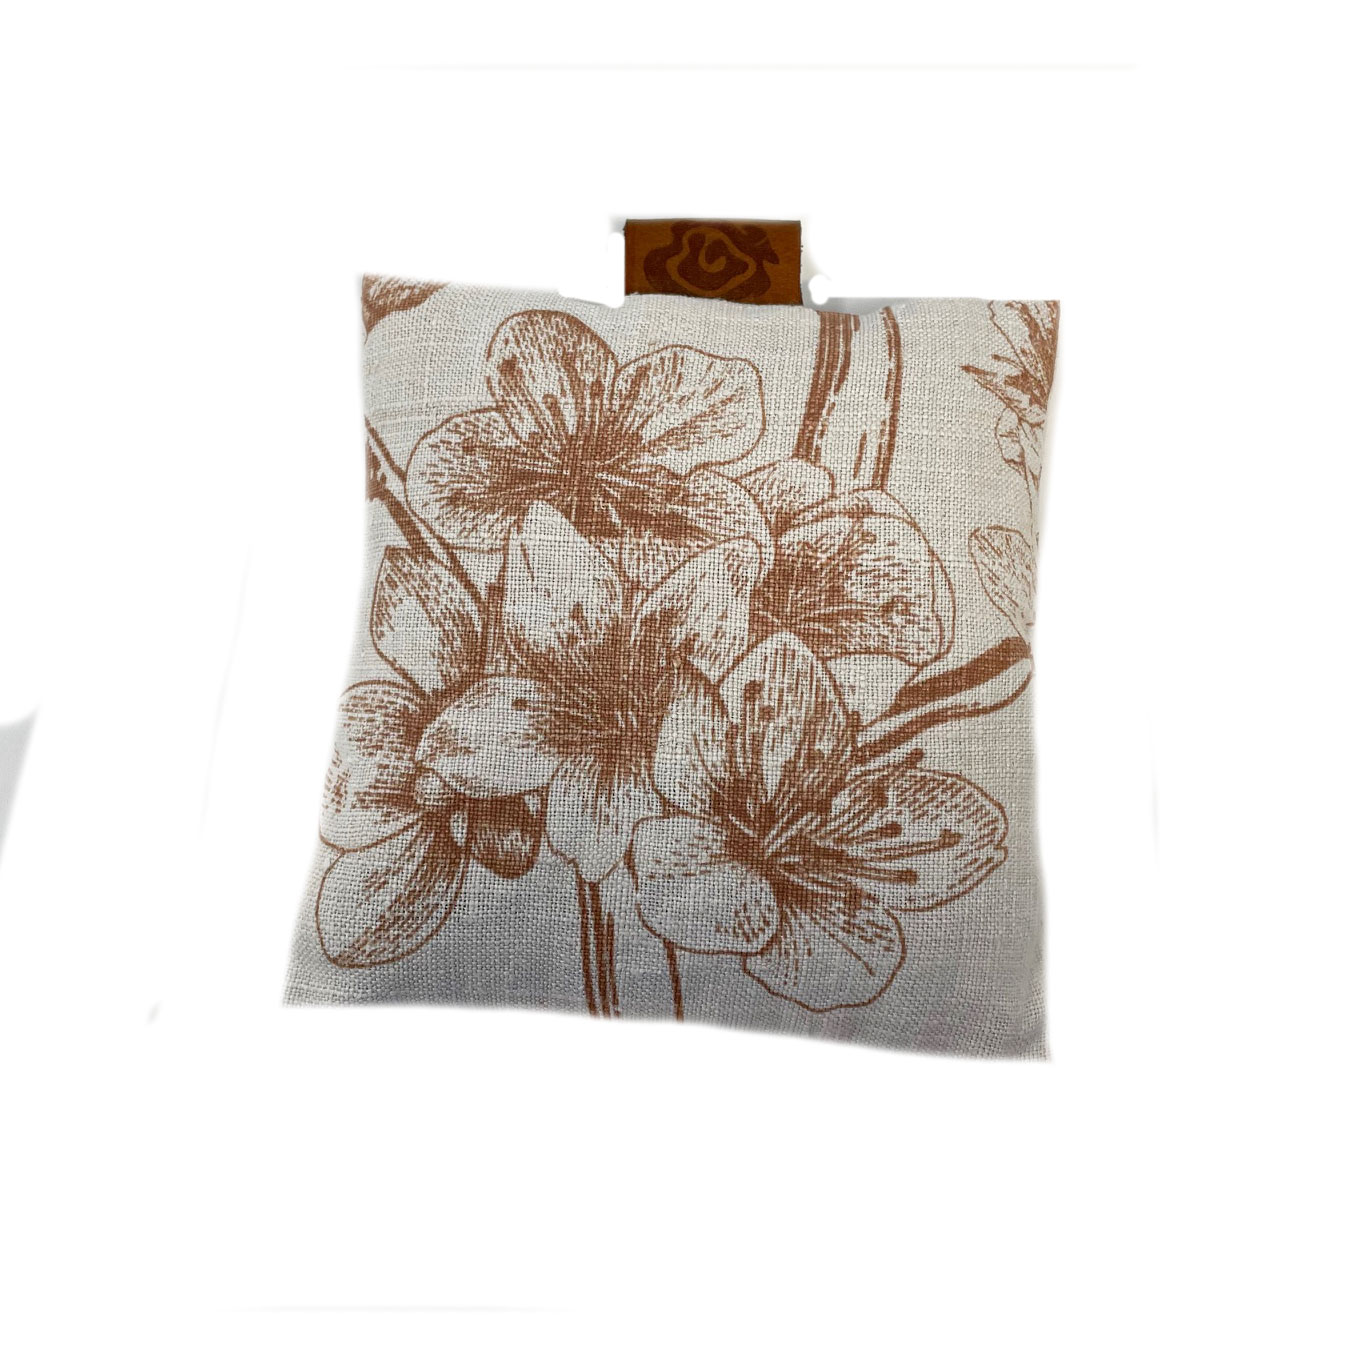 Dorothee Lehnen Duftsäckchen, bedrucktes antikes Leinen, Kirschblüte Füllung: Lavendelblüten von Dorothee Lehnen   